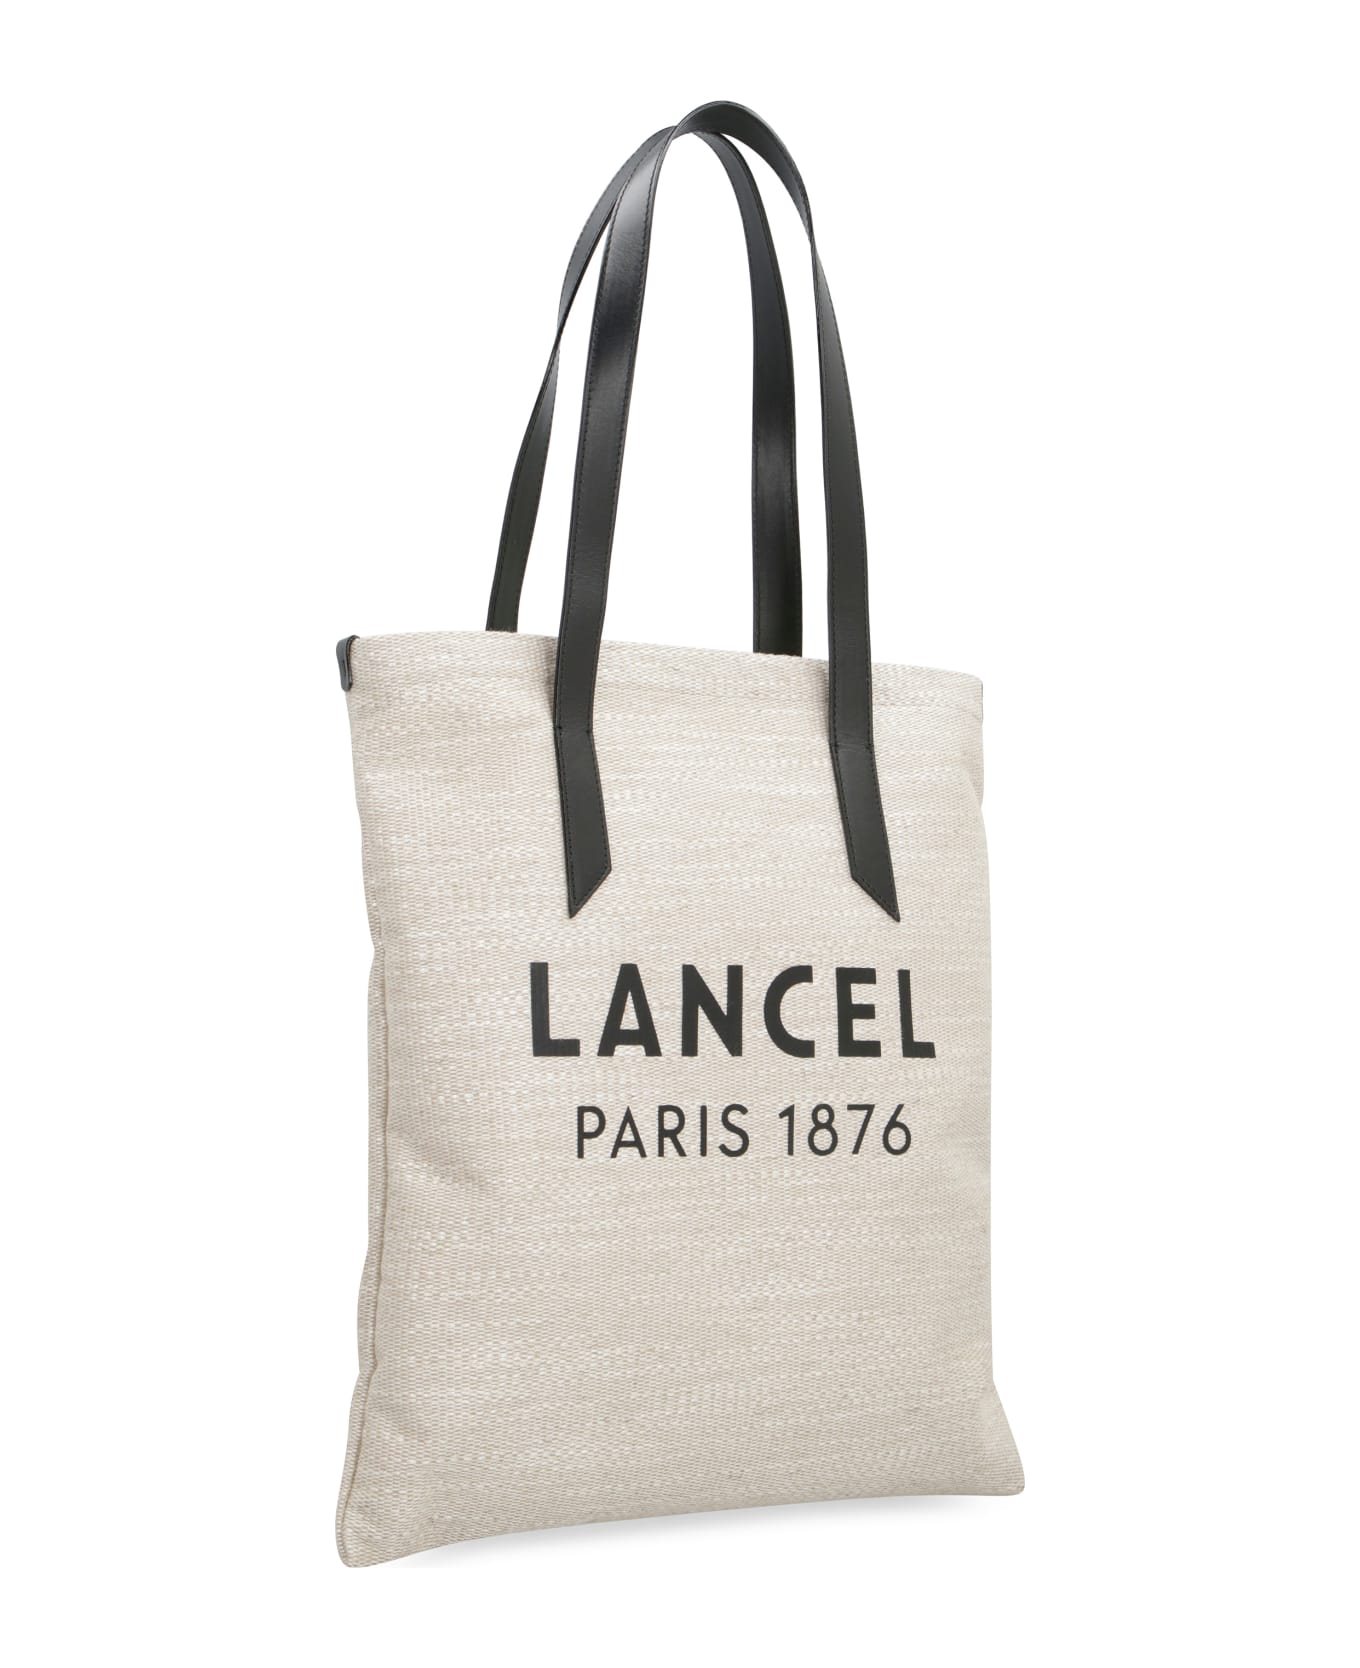 Lancel Summer Tote Bag - Beige